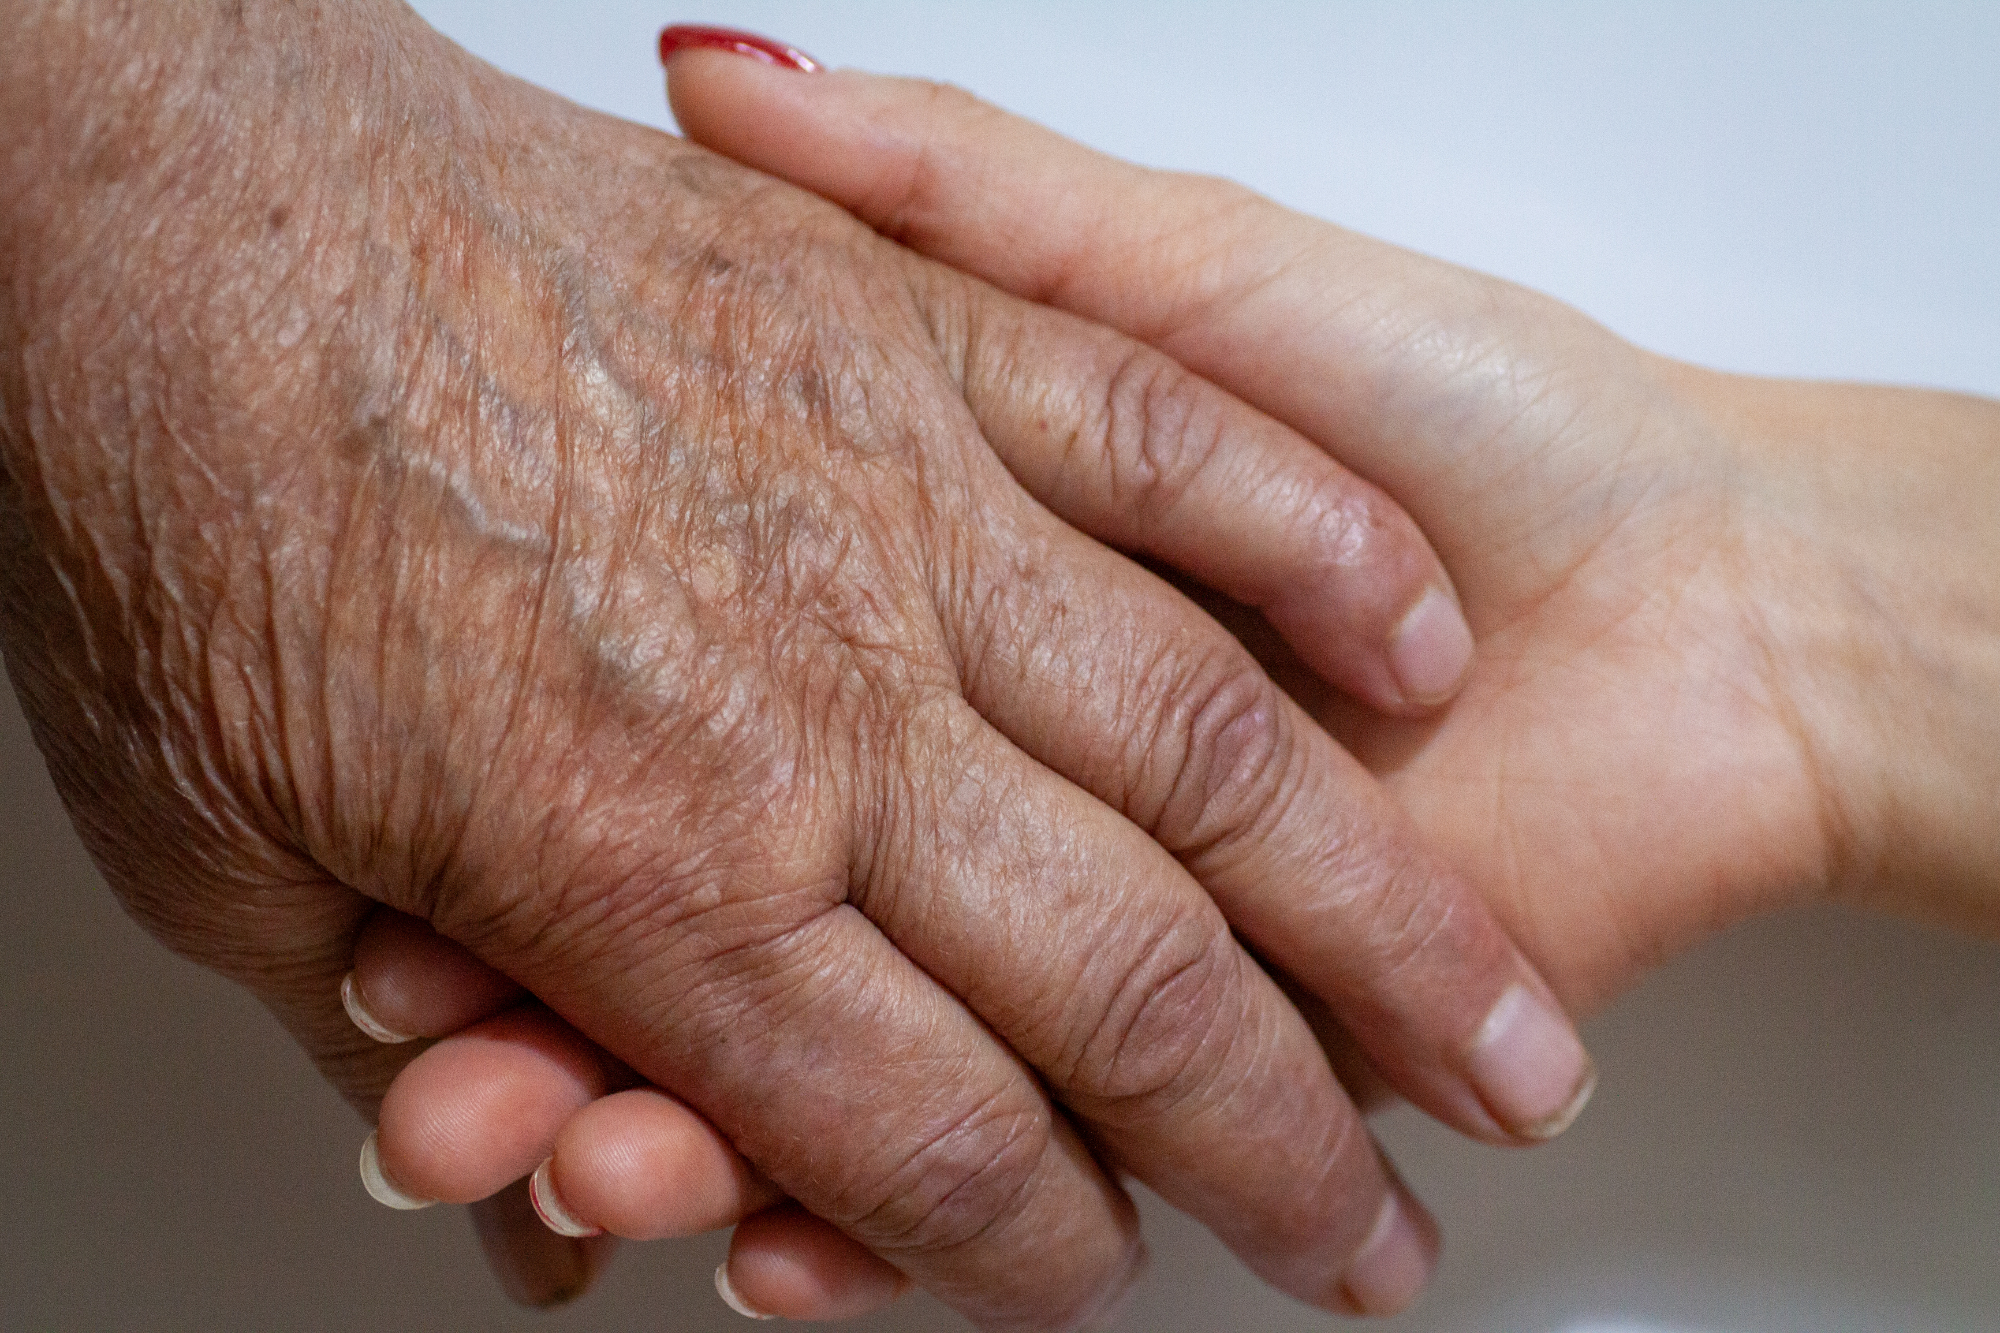 Revmatoidni artritis je danes zelo pogosta vnetna bolezen pri starejših